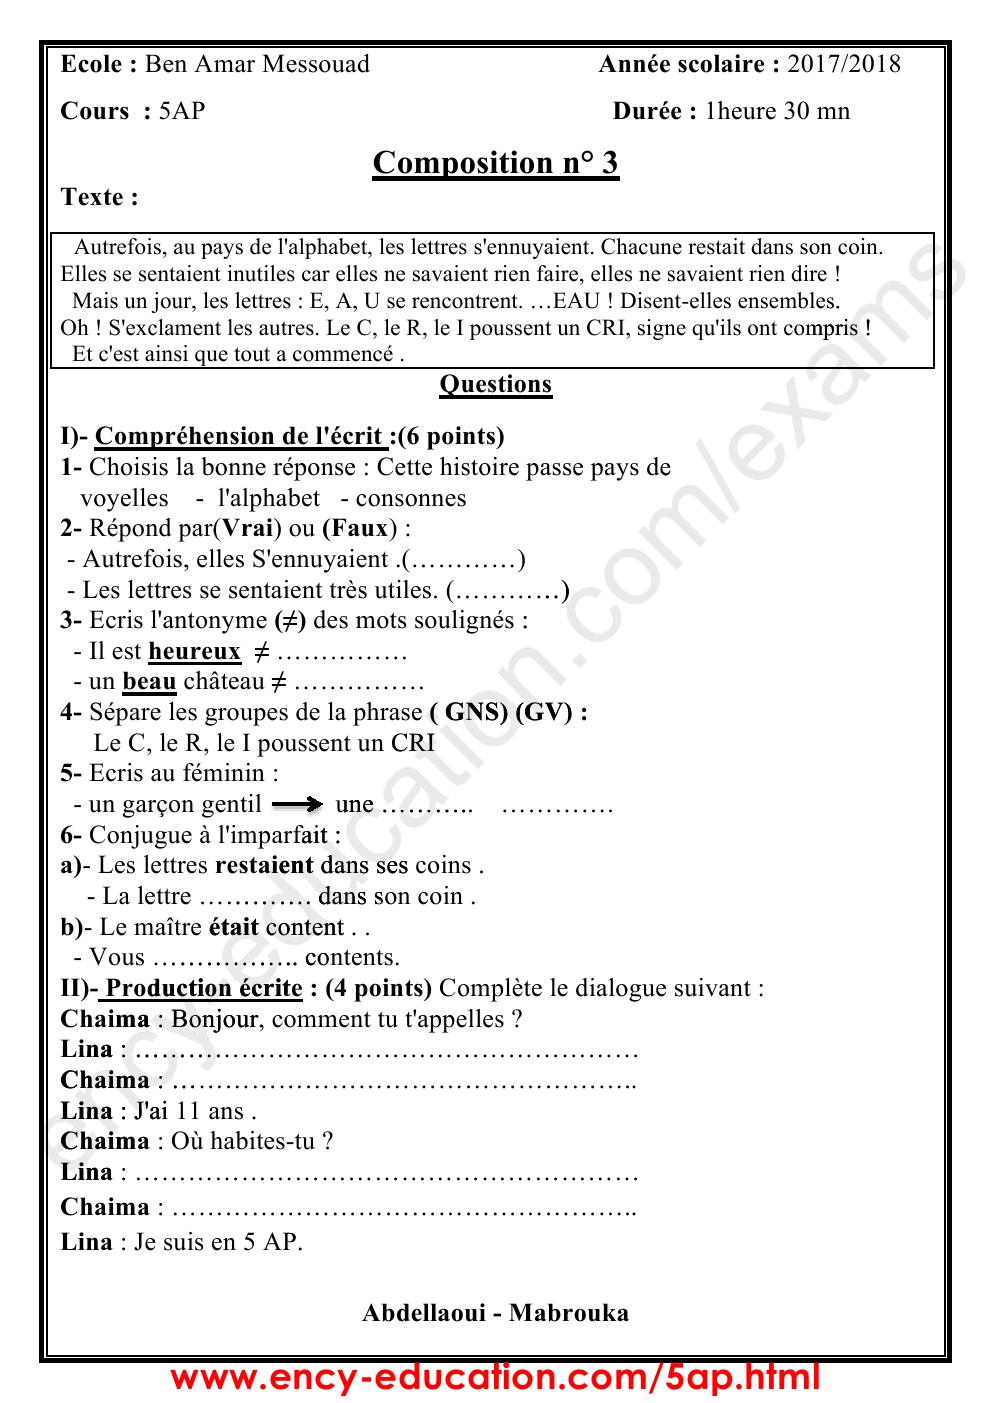 اختبارات الفصل الثالث لغة فرنسية الجيل الثاني الخامسة ابتدائي 0001167